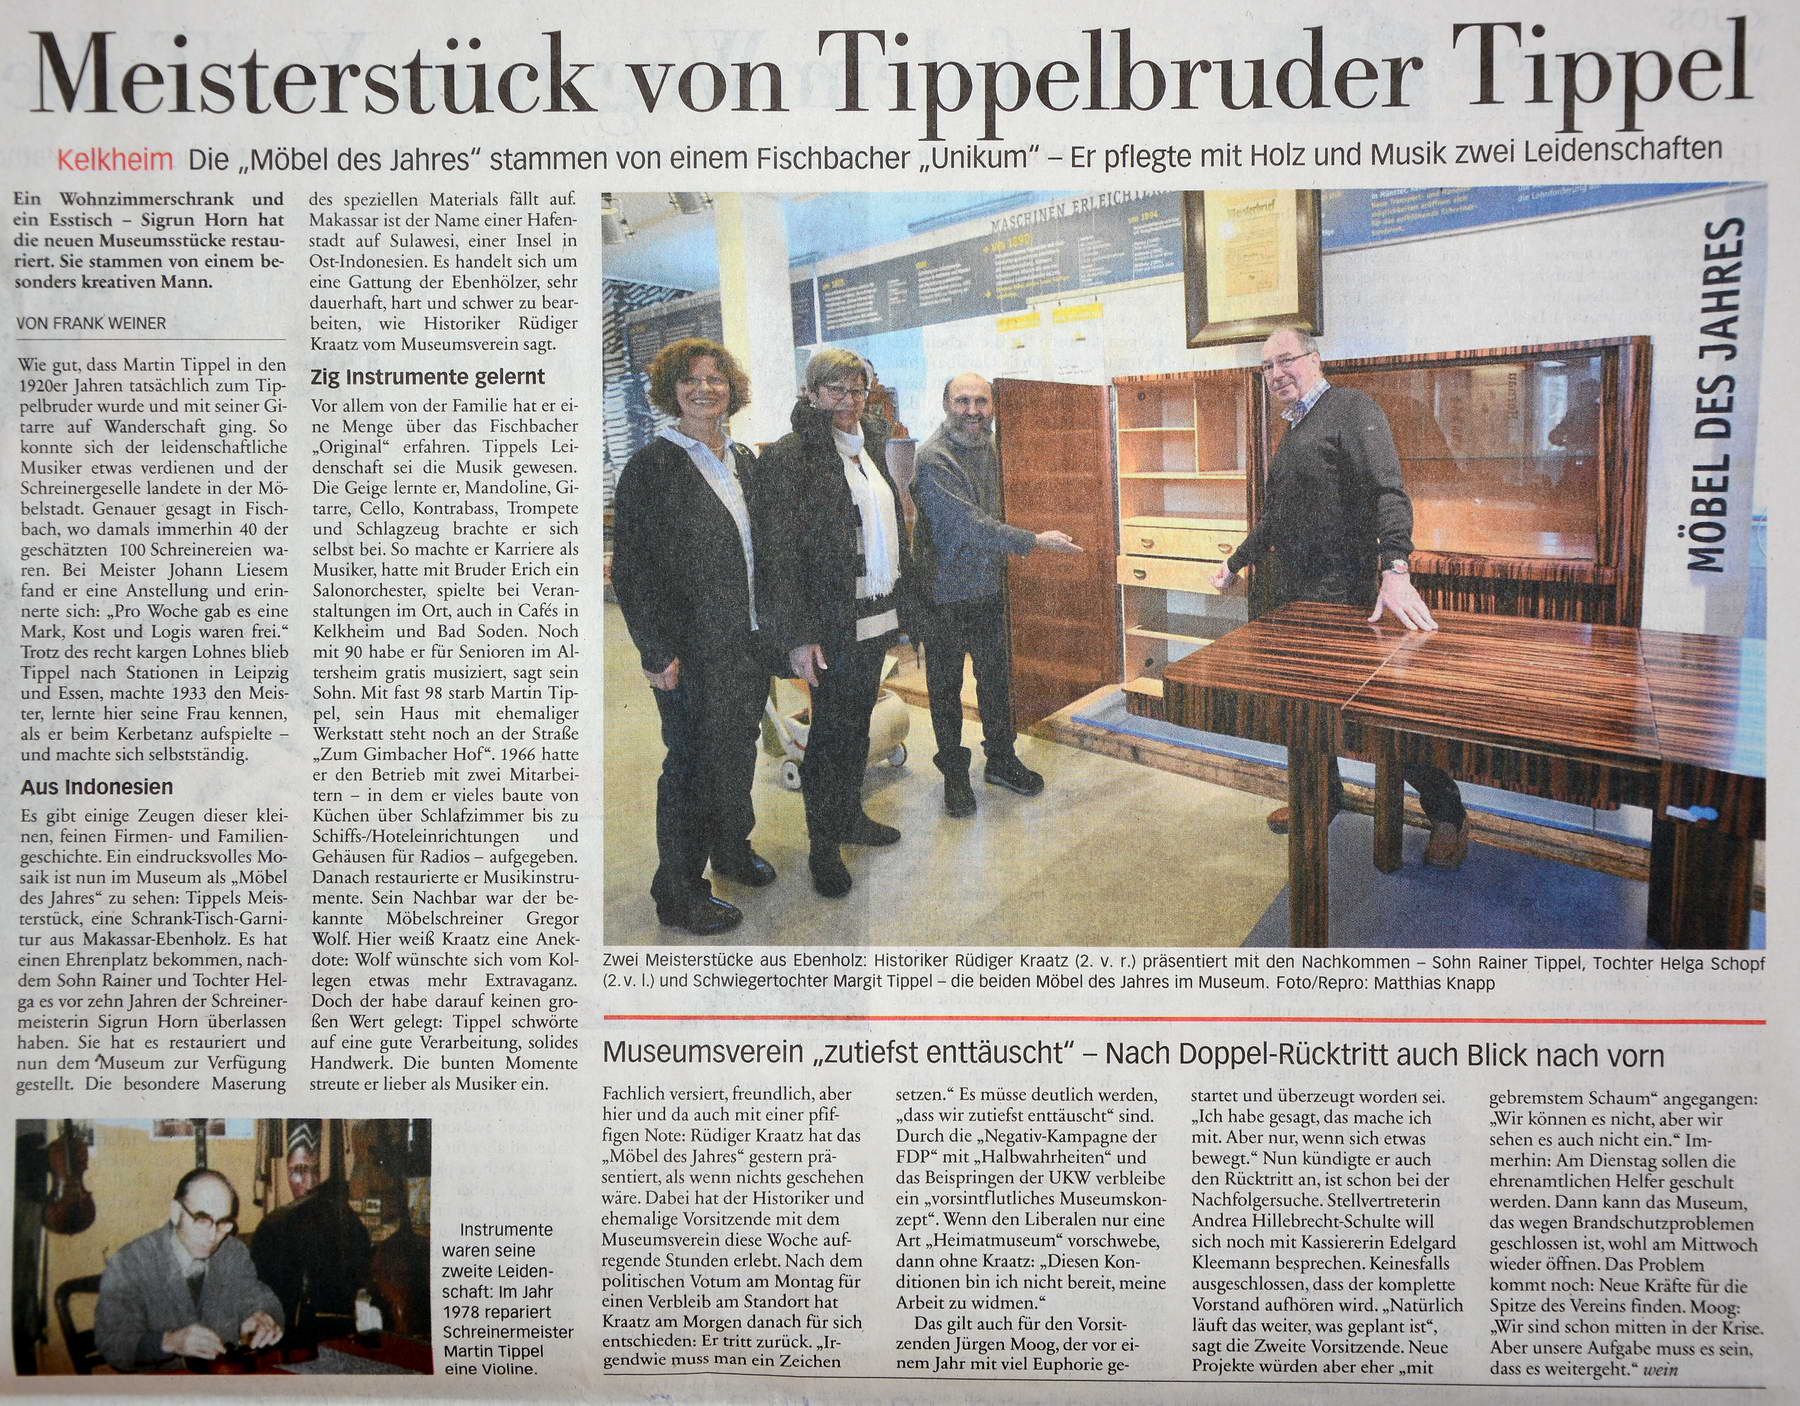 2018.02.24 HK Meisterstück von Tippelbruder Tippel